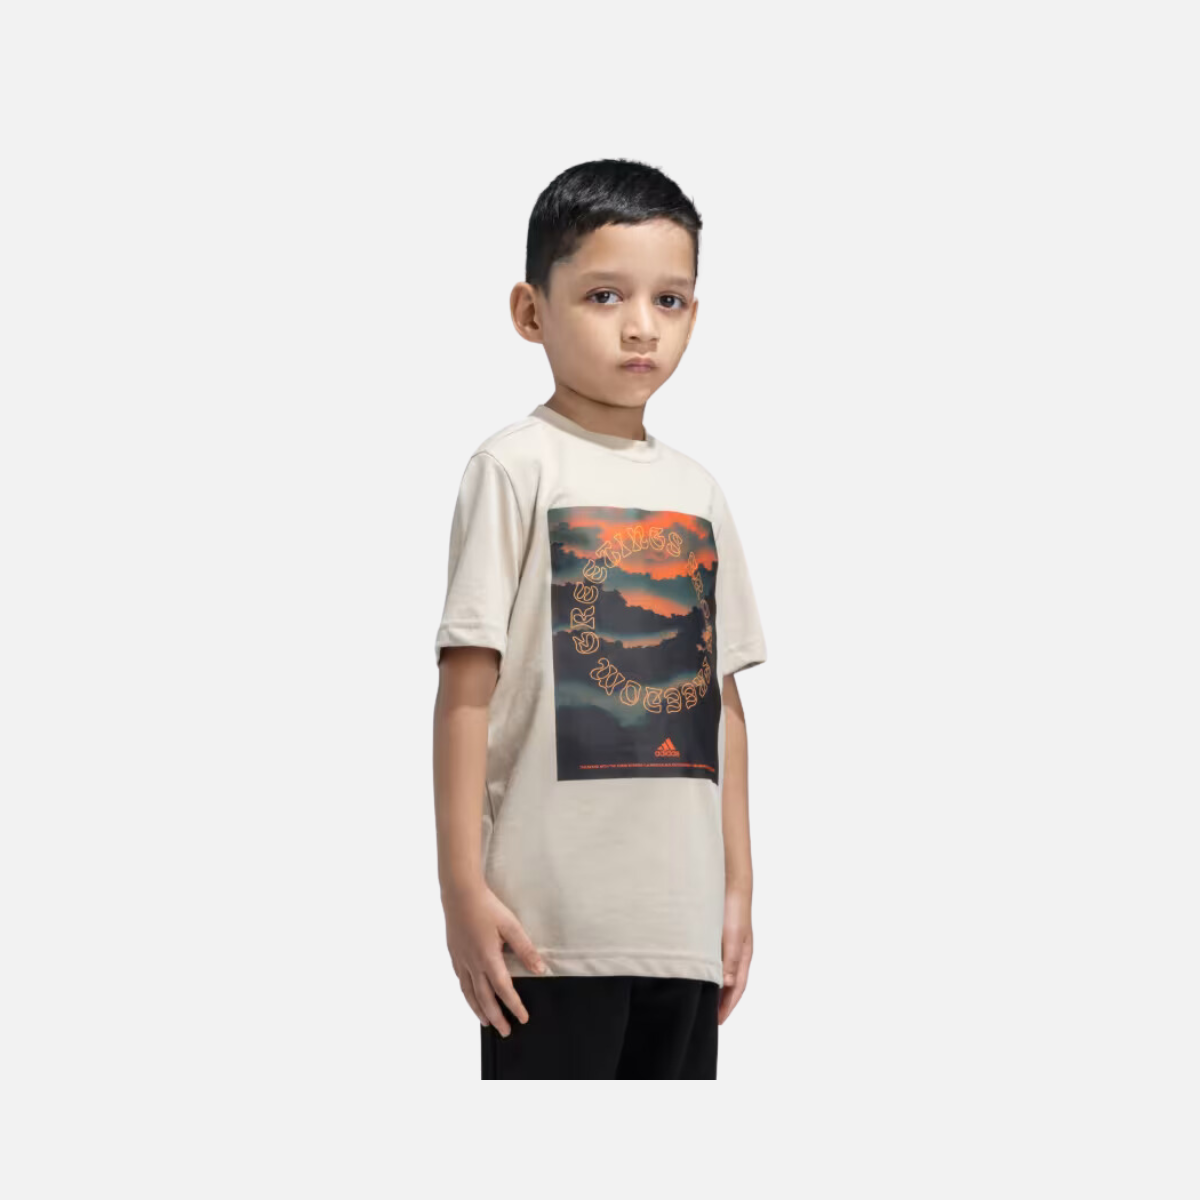 Adidas Kids Boy T-shirt (7-16 Years) -Wonder Beige